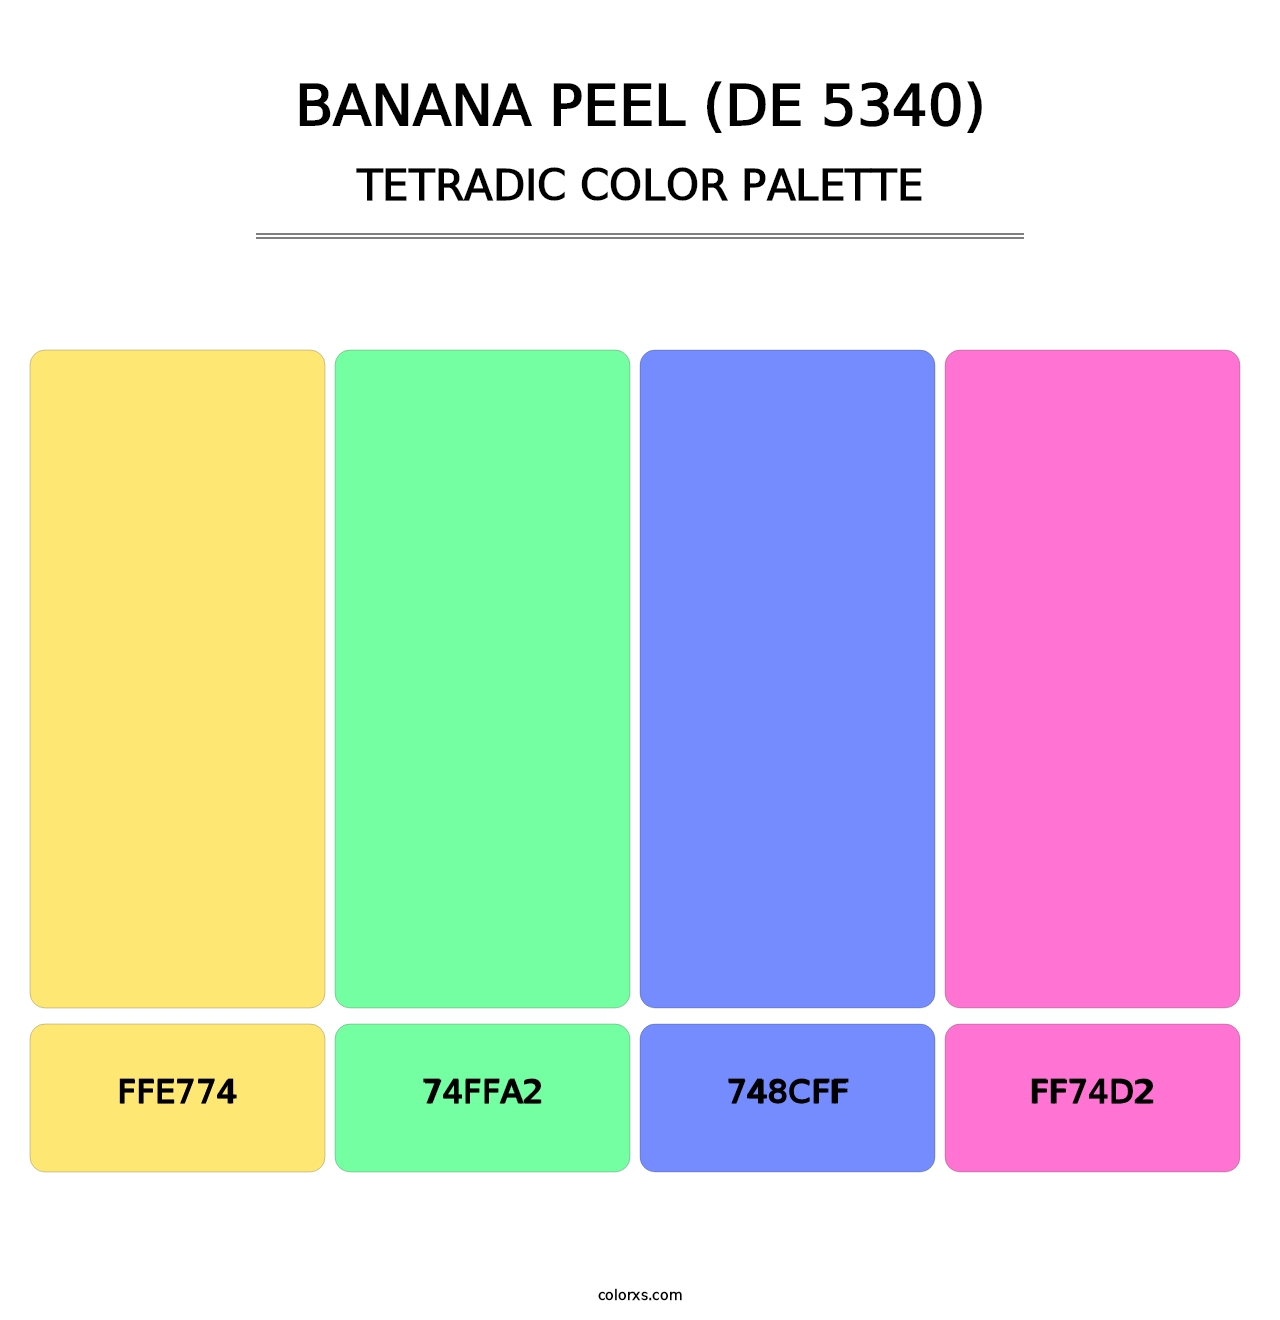 Banana Peel (DE 5340) - Tetradic Color Palette